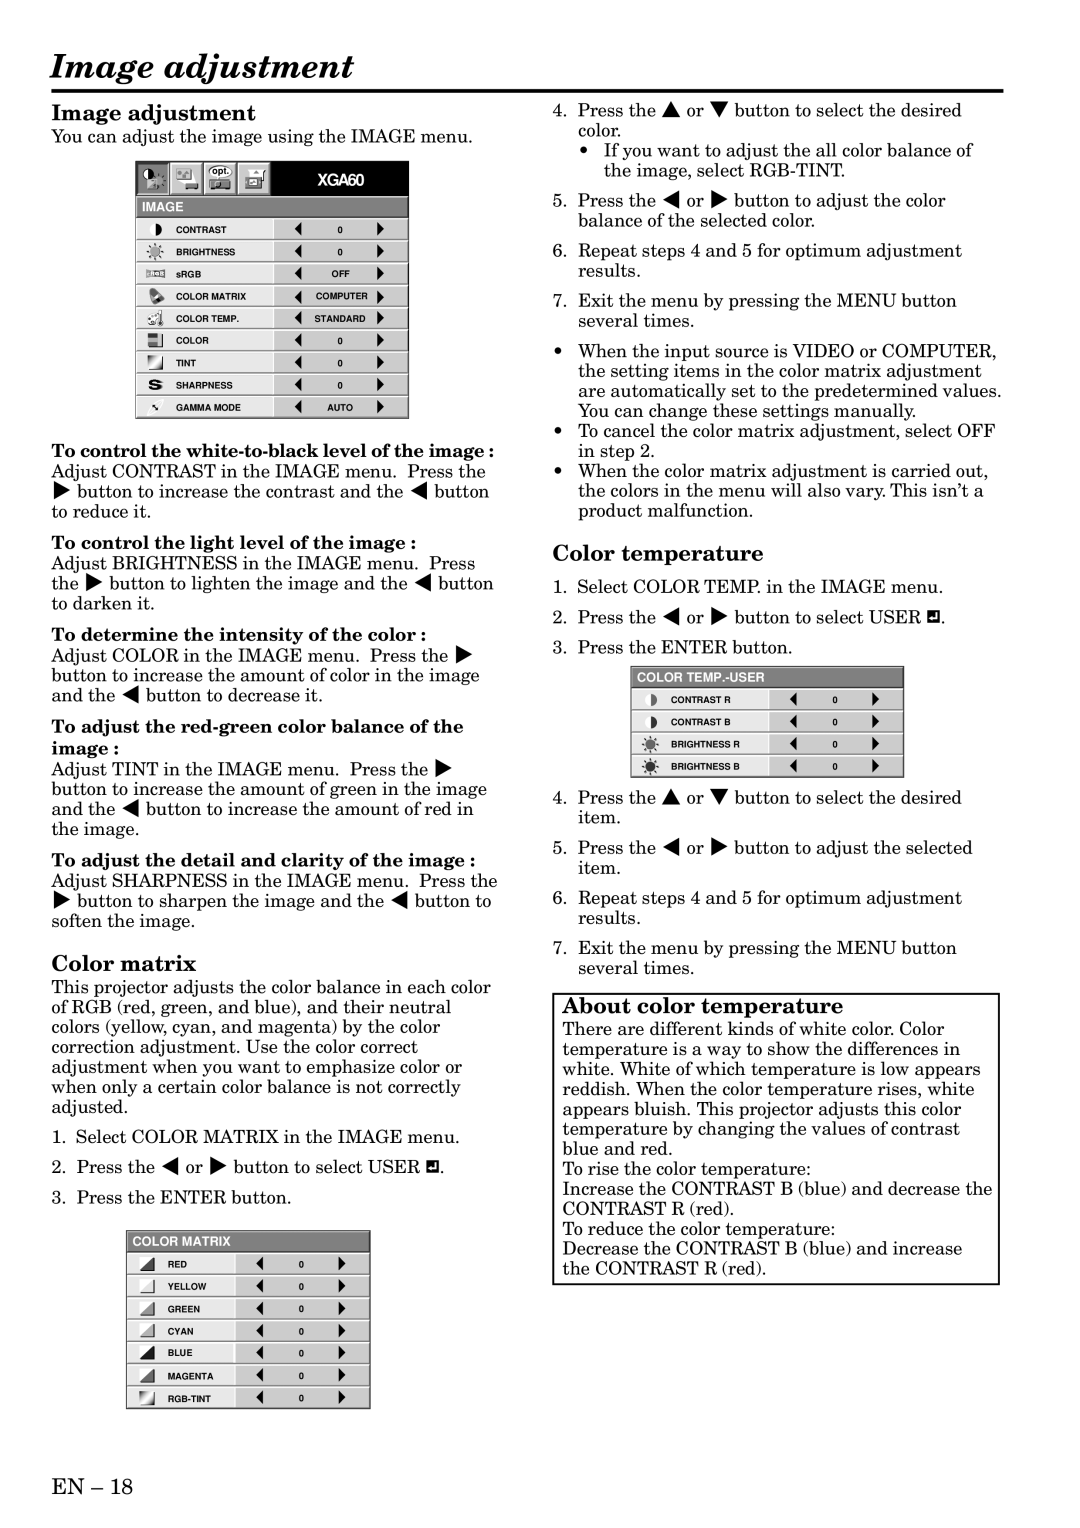 Mitsubishi Electronics XL5U user manual Image adjustment, Color matrix, Color temperature, About color temperature 